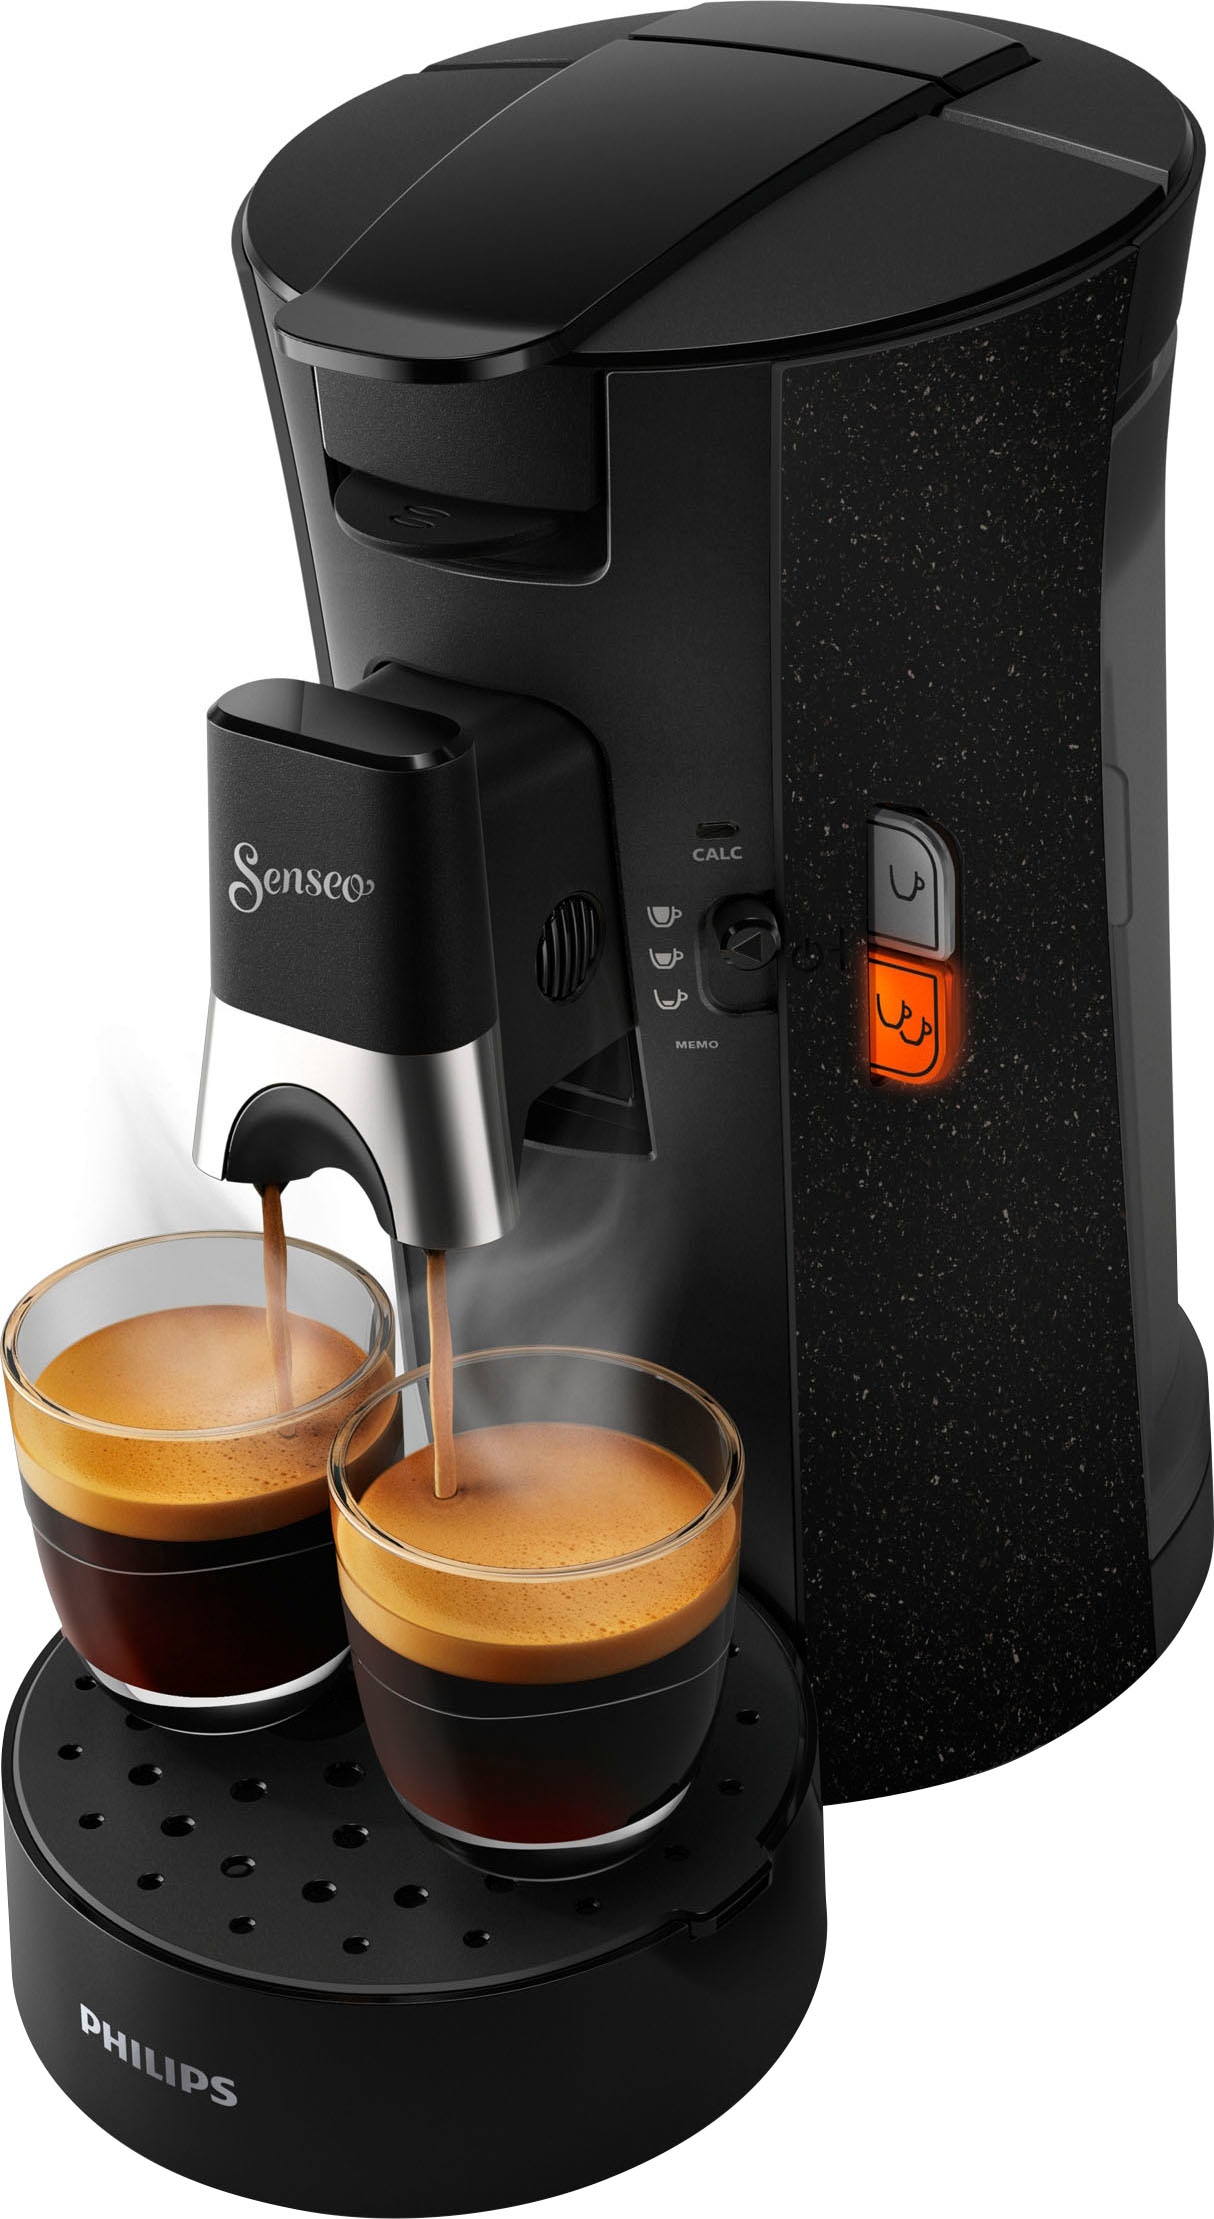 Philips Senseo Kaffeepadmaschine »Select ECO CSA240/20«, inkl. Gratis- Zugaben im Wert von € 14 - UVP, schwarz mit 3 Jahren XXL Garantie